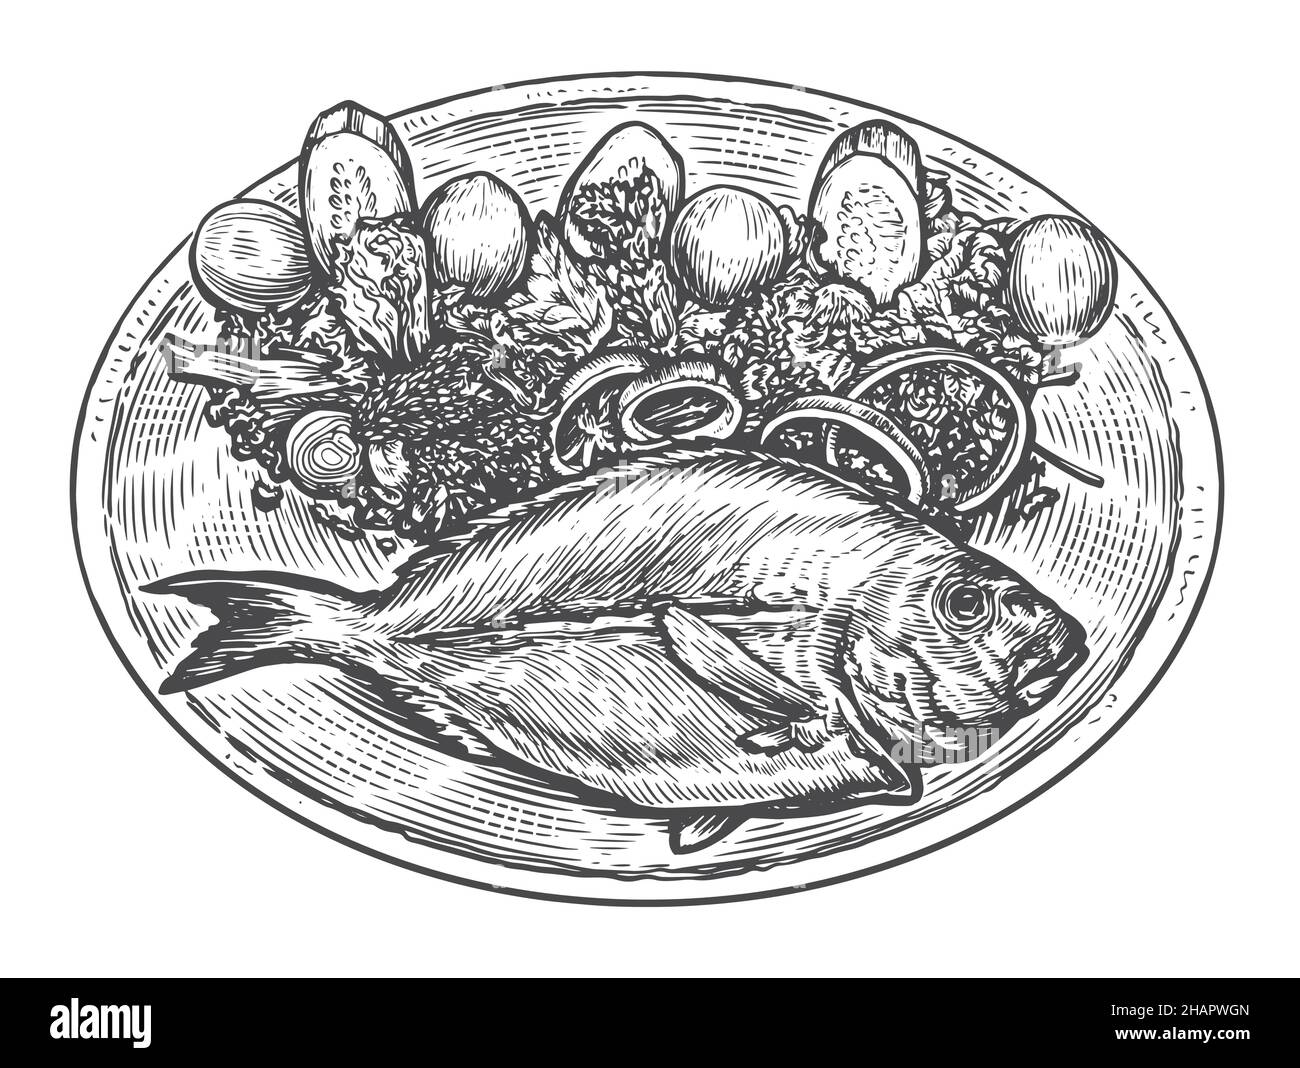 Pesce cotto con guarnitura sul piatto. Cucina di pesce. Illustrazione vettoriale dello schizzo degli alimenti Illustrazione Vettoriale